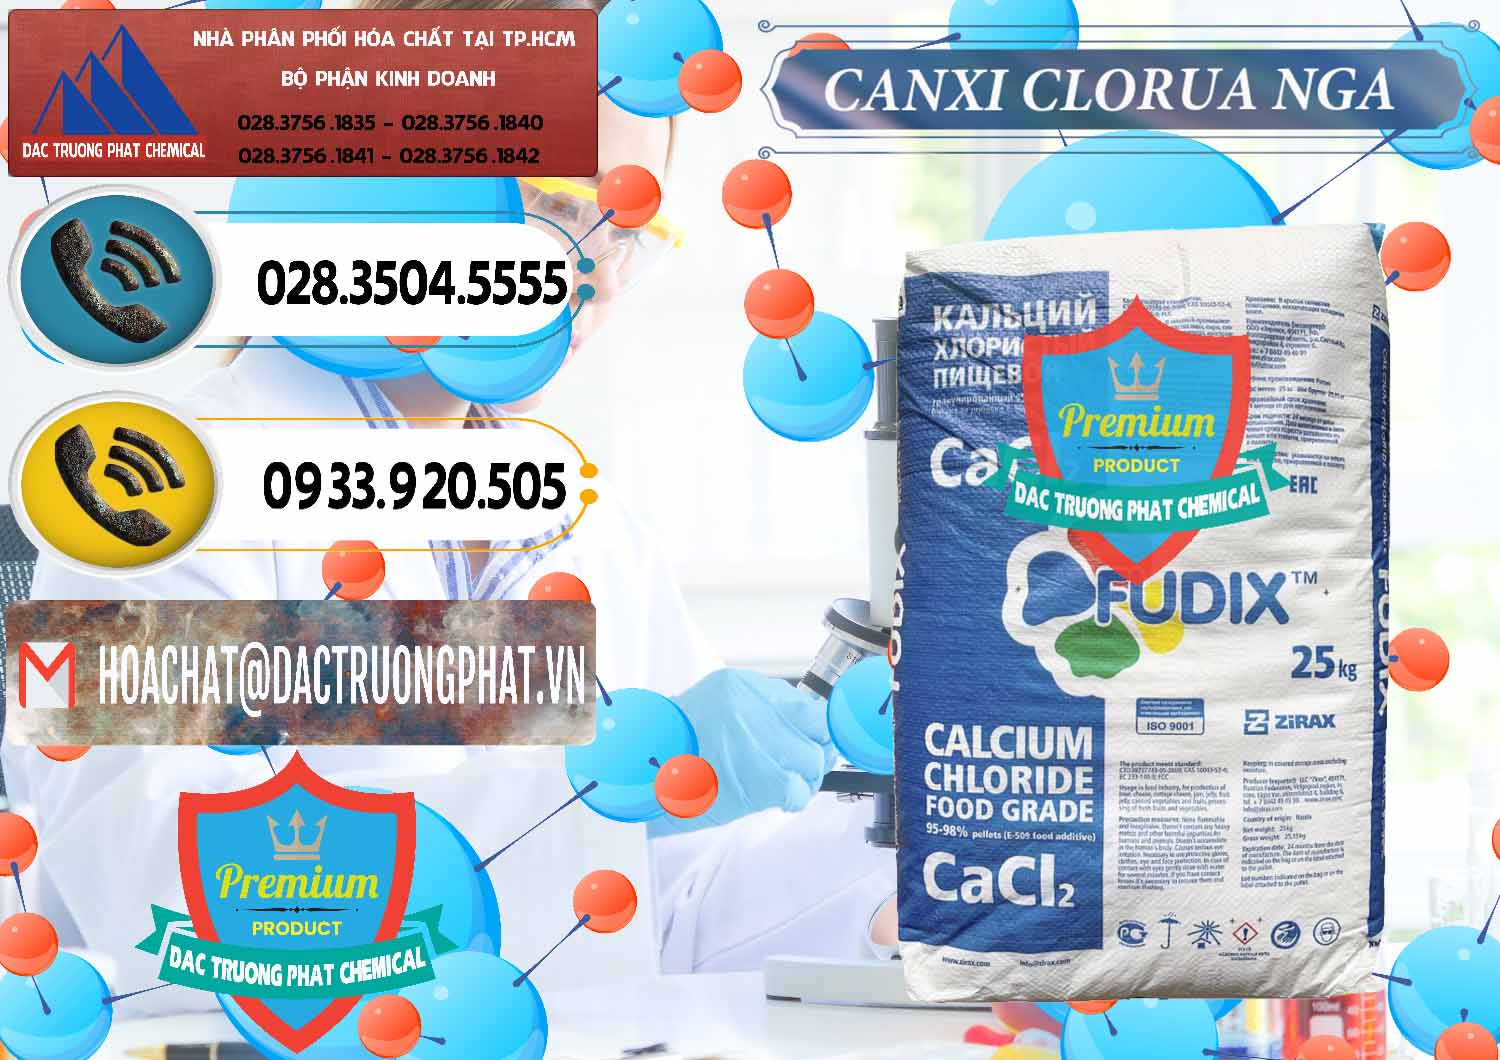 Công ty cung cấp - bán CaCl2 – Canxi Clorua Nga Russia - 0430 - Phân phối ( nhập khẩu ) hóa chất tại TP.HCM - hoachatdetnhuom.vn